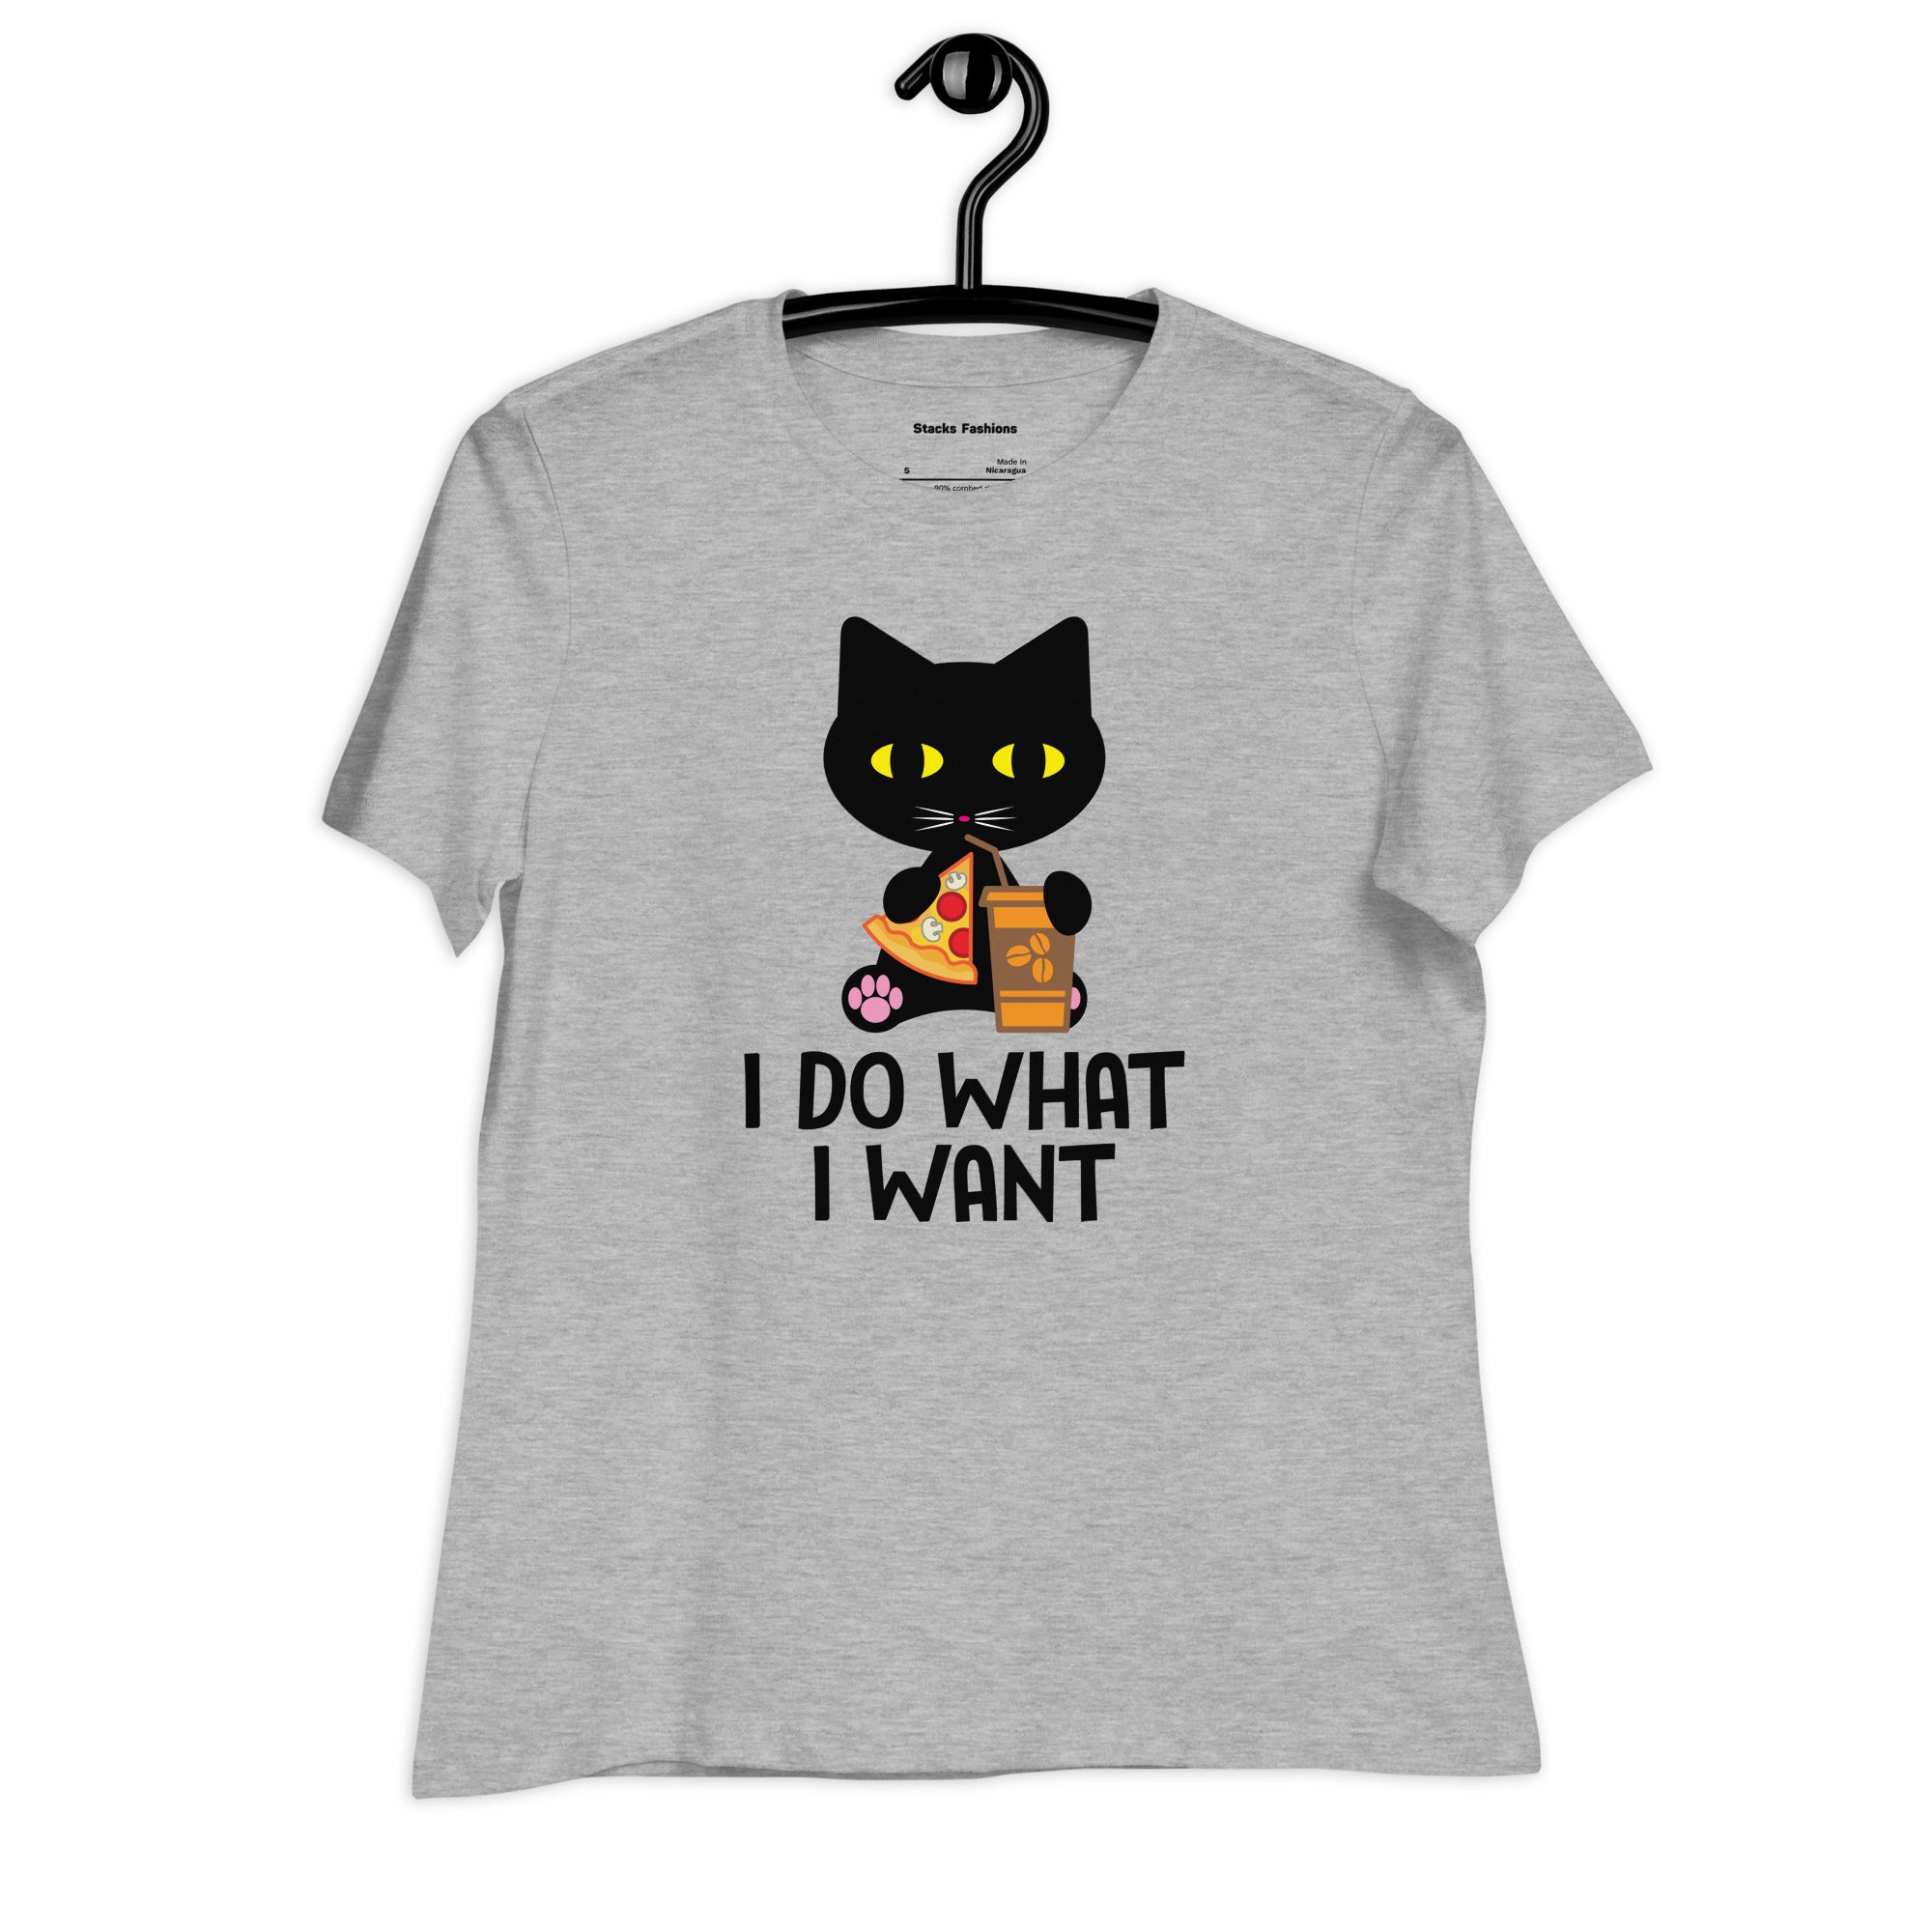 I do want I want T-Shirt.